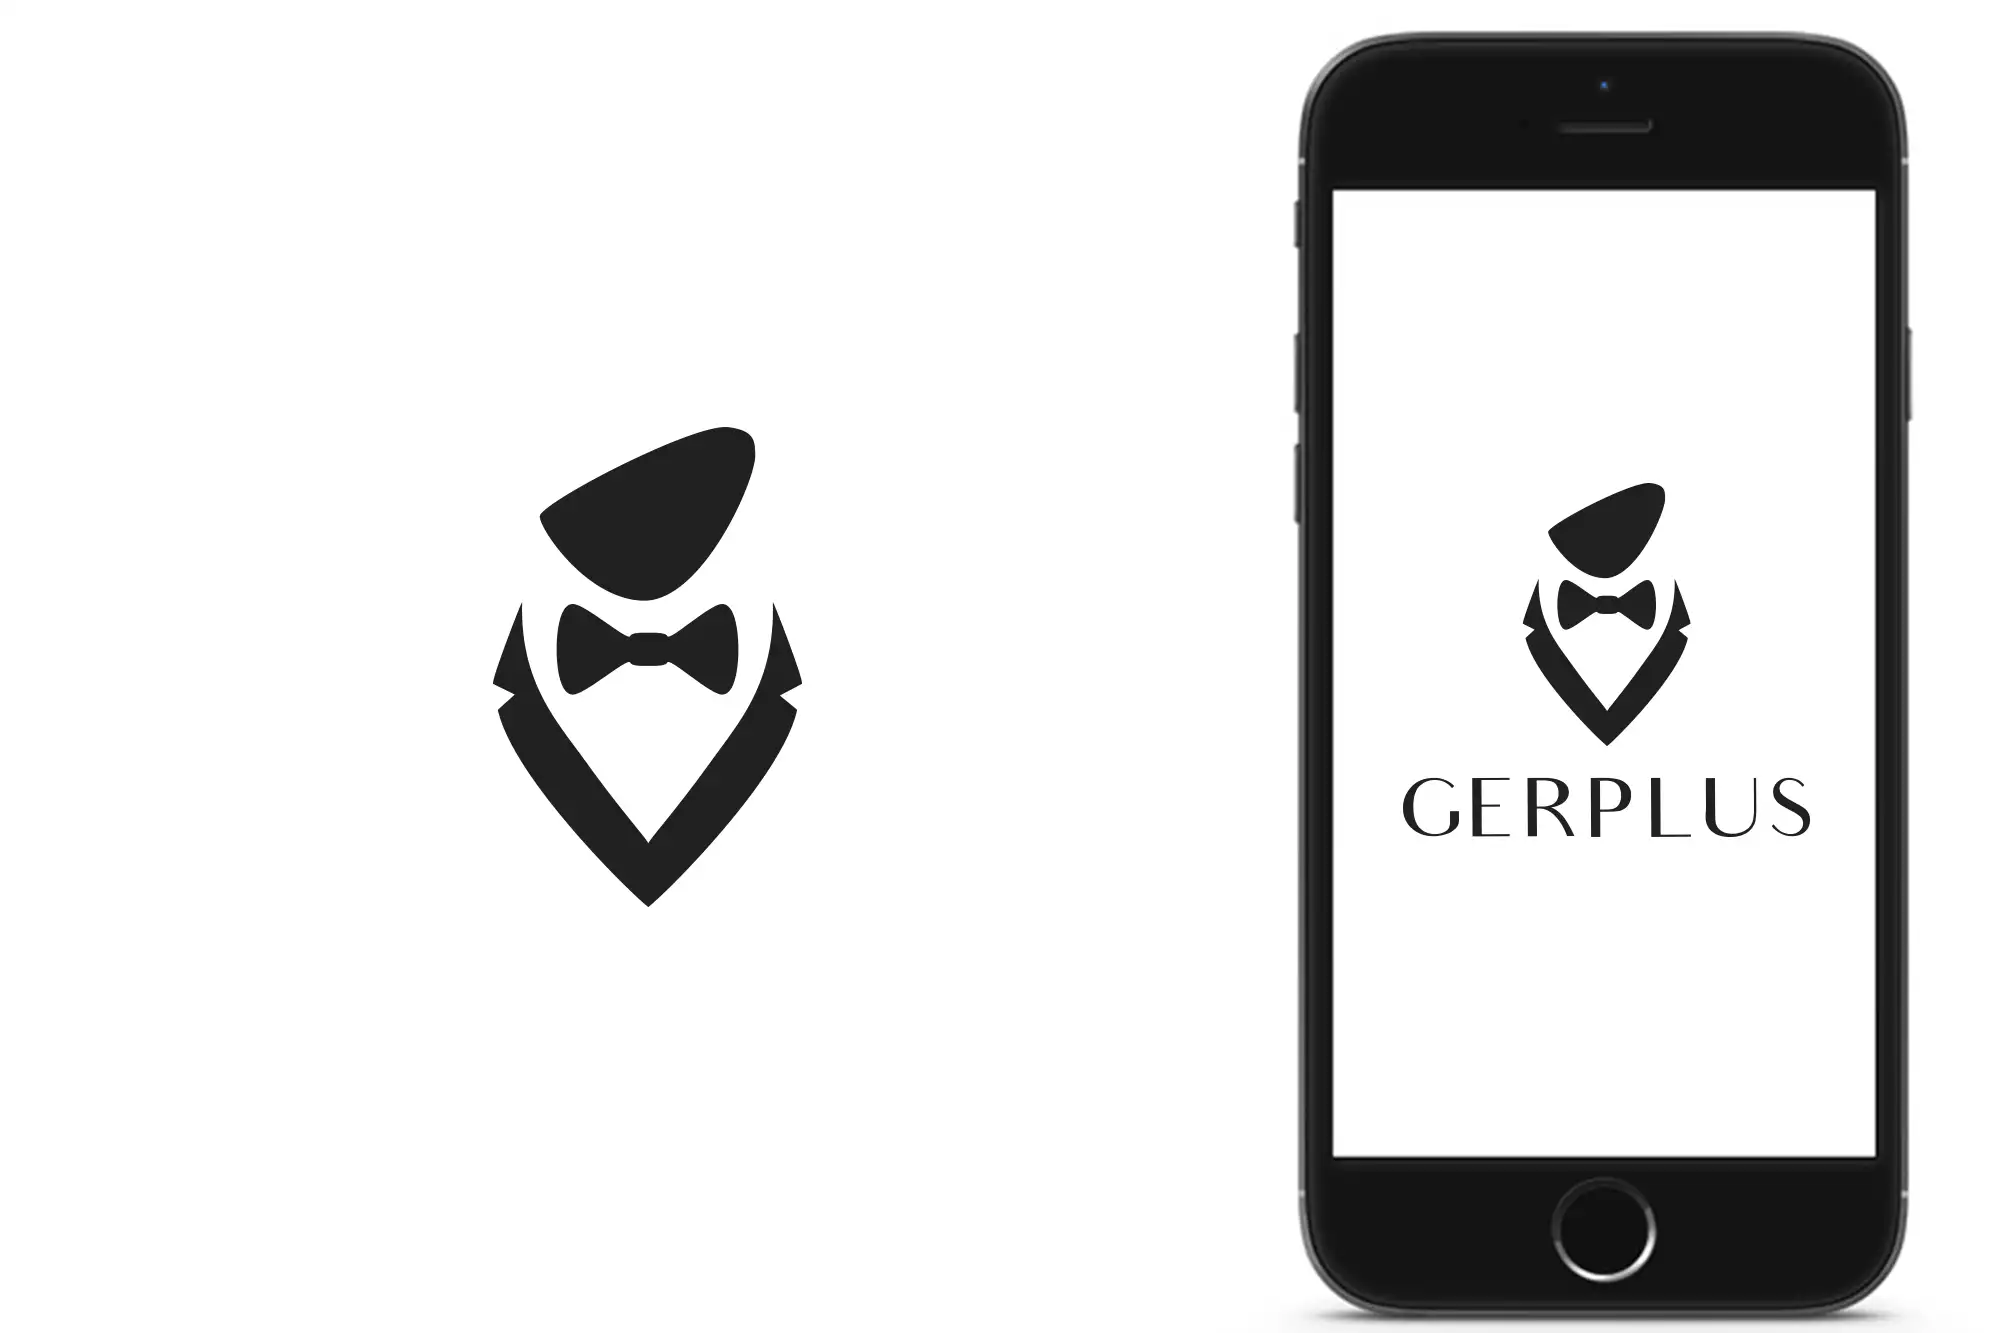 Demo du nouveau logo conçu pour GERPLUS